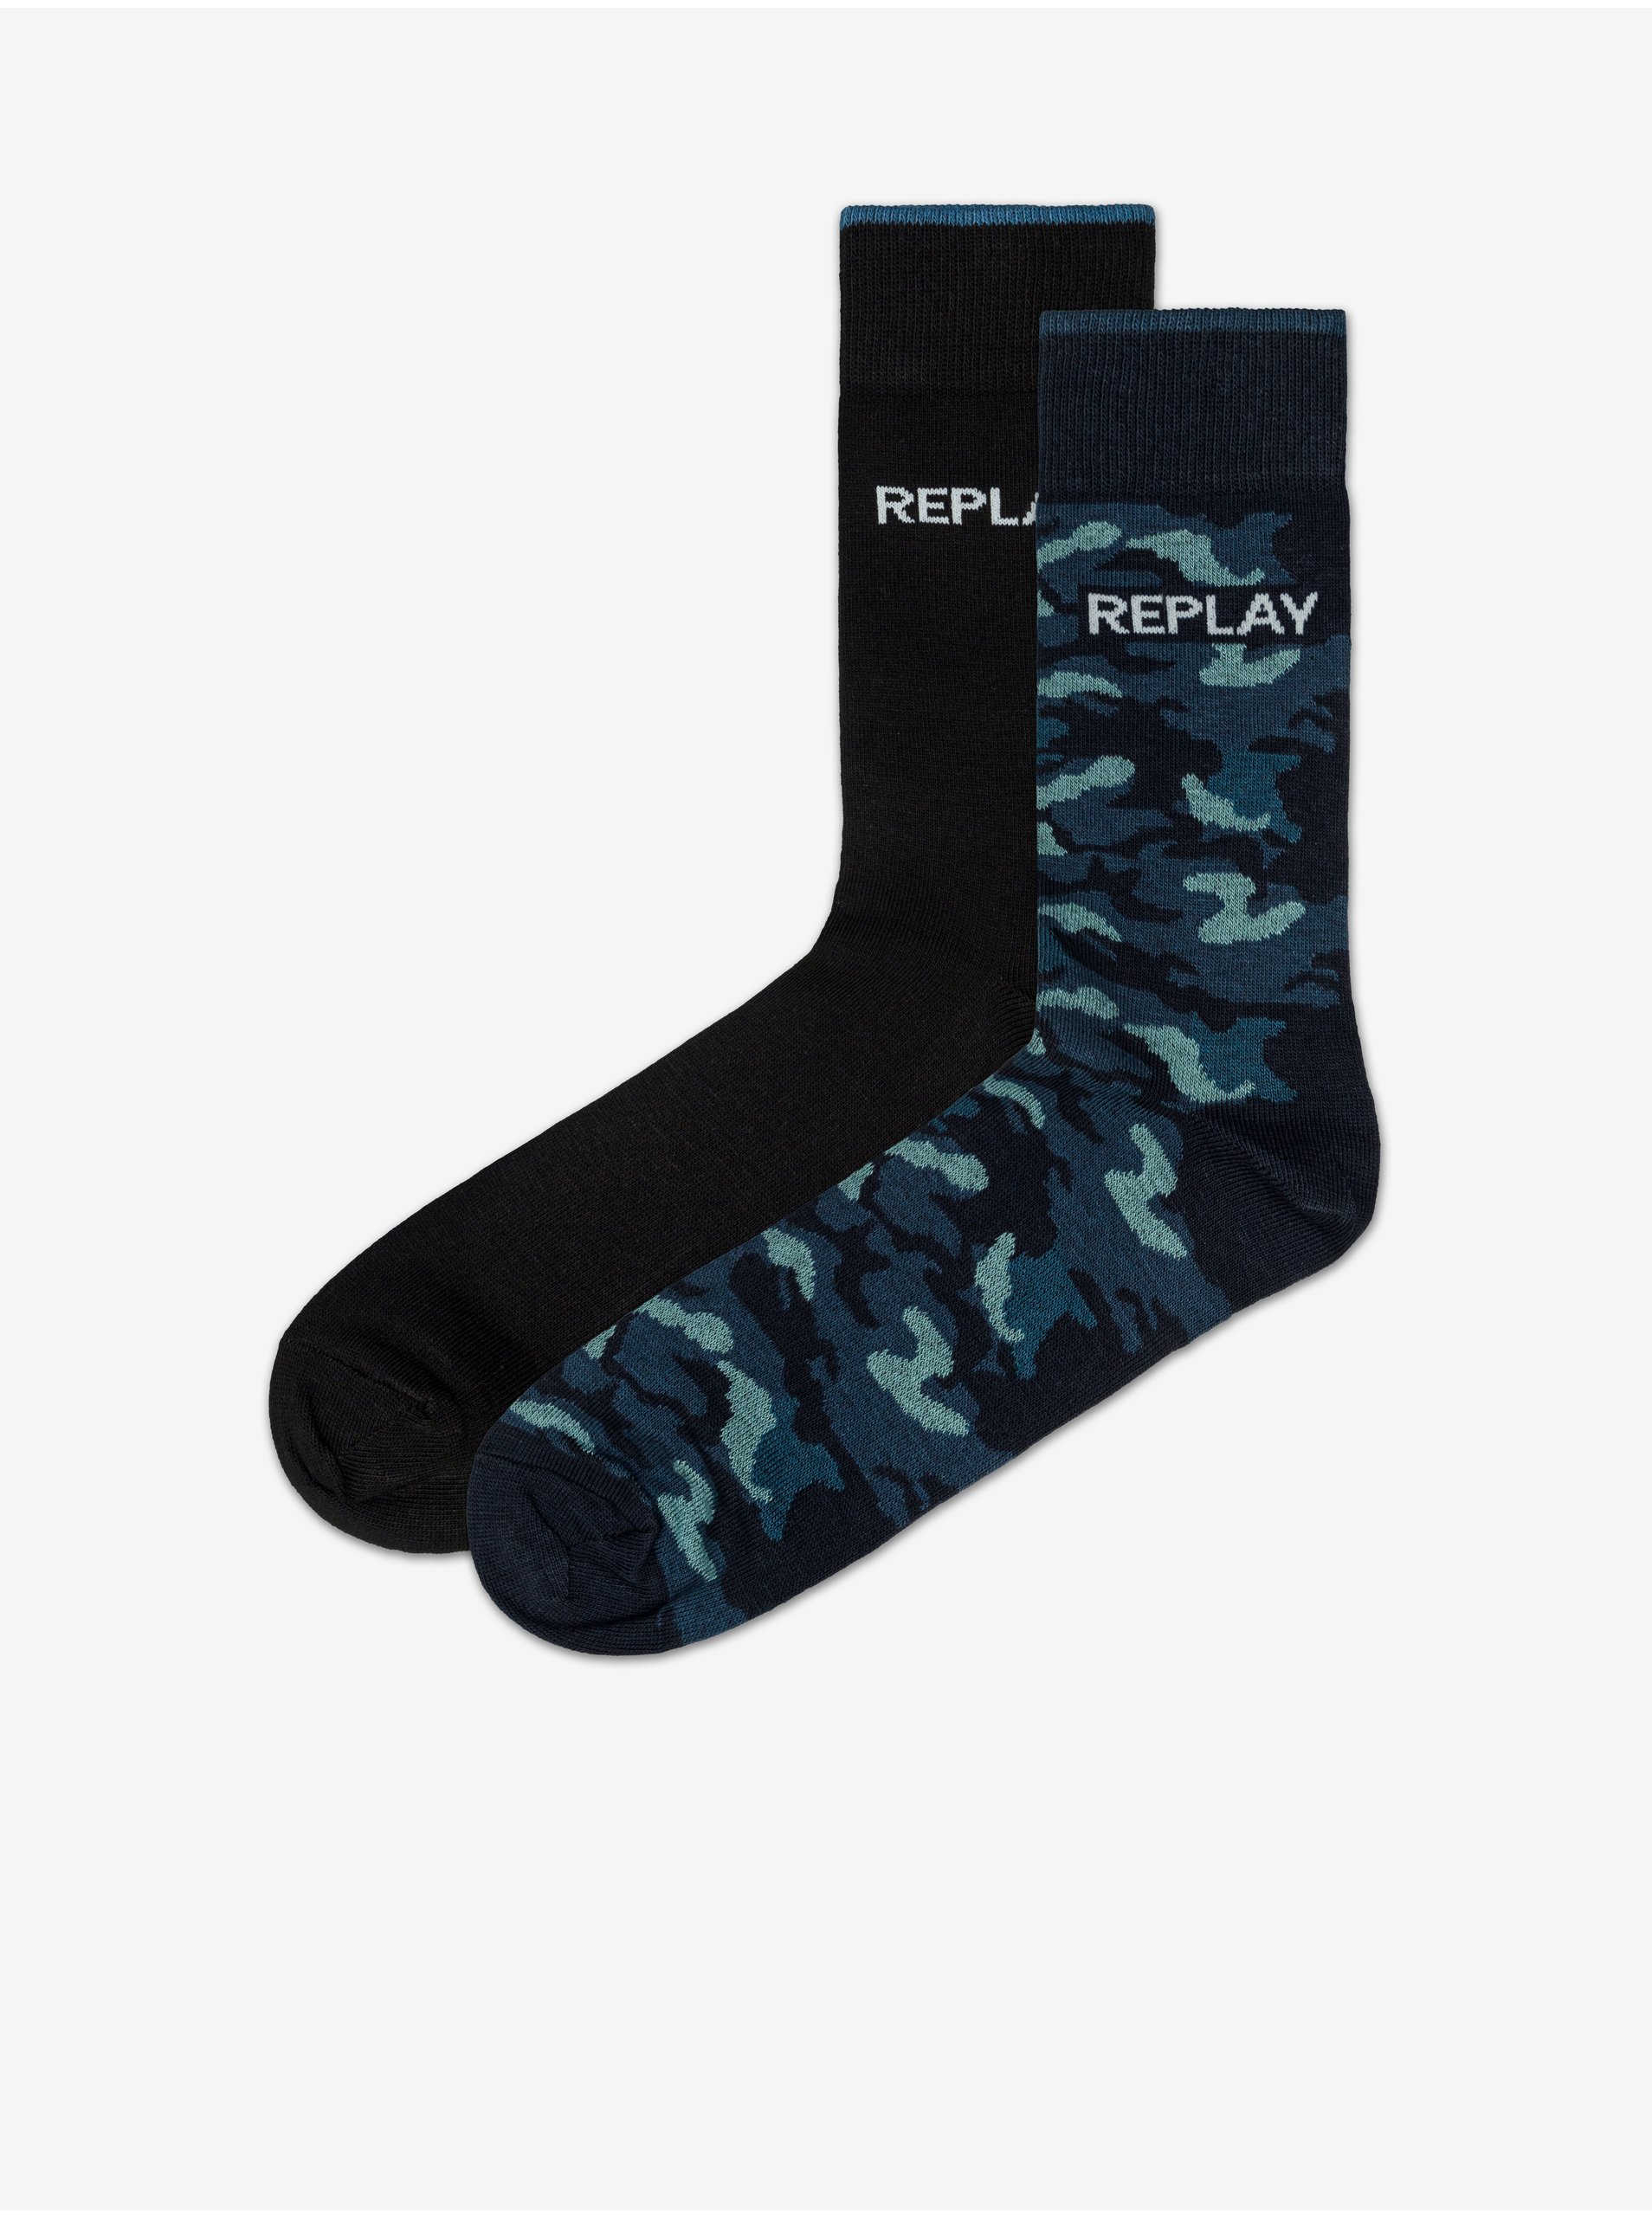 E-shop Sada dvou párů vzorovaných ponožek v černé a modré barvě Replay Banderole